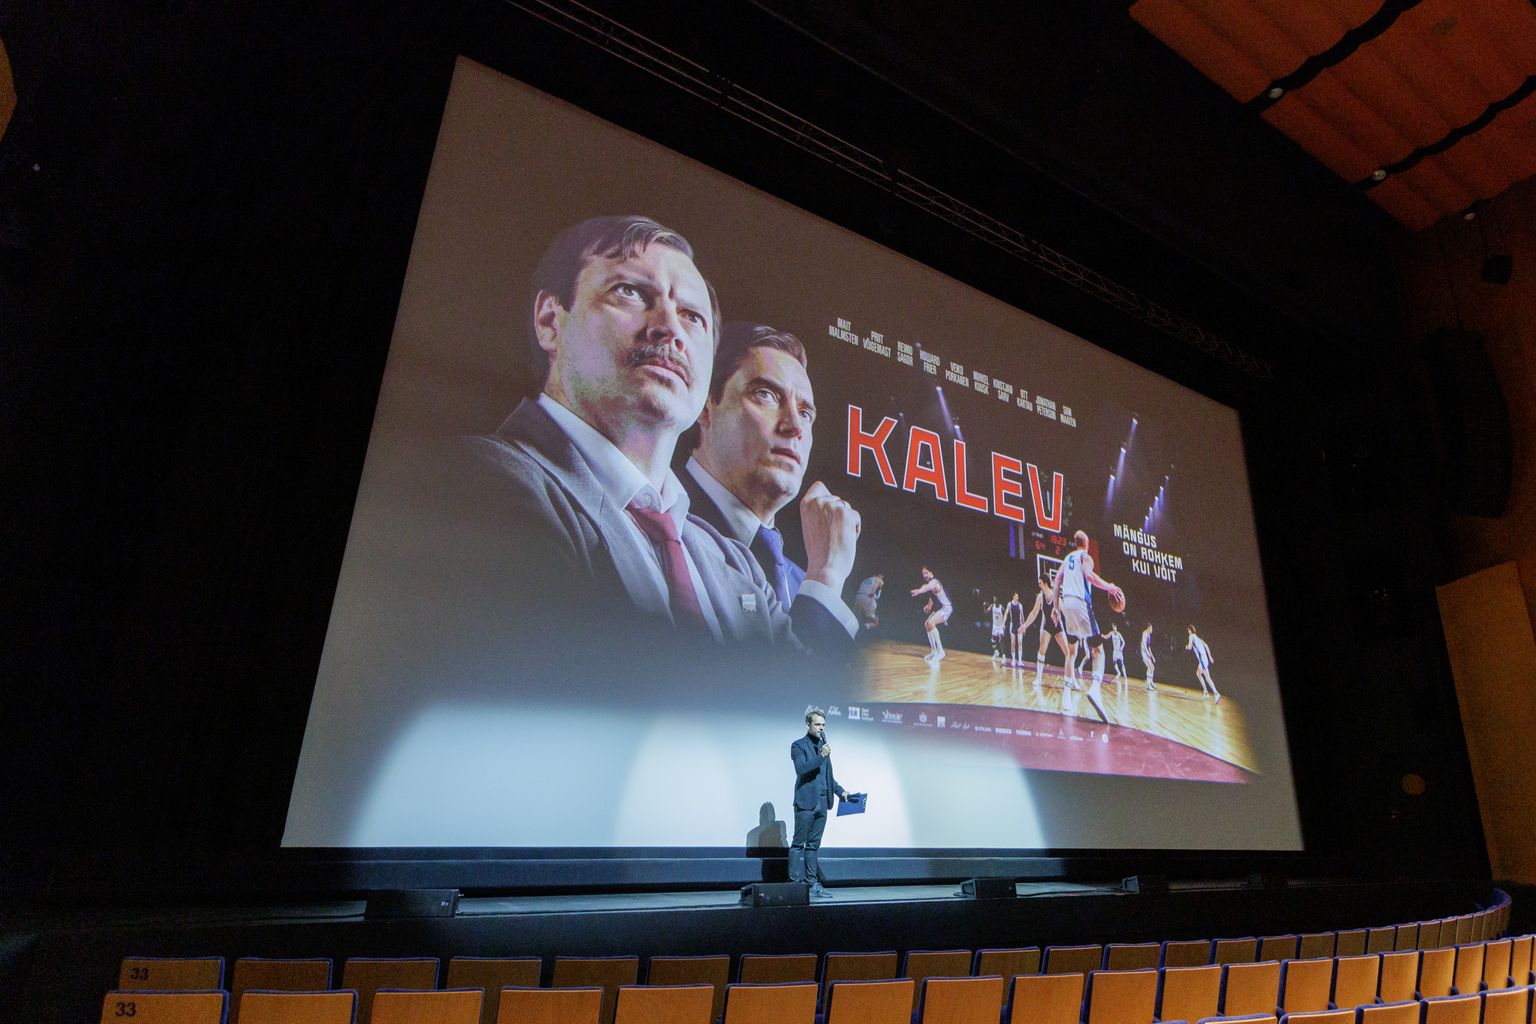 22.09.2022, Tallinn
Filmi “Kalev” esilinastus Alexela kontserdimajas.
Foto Mihkel Maripuu, Postimees